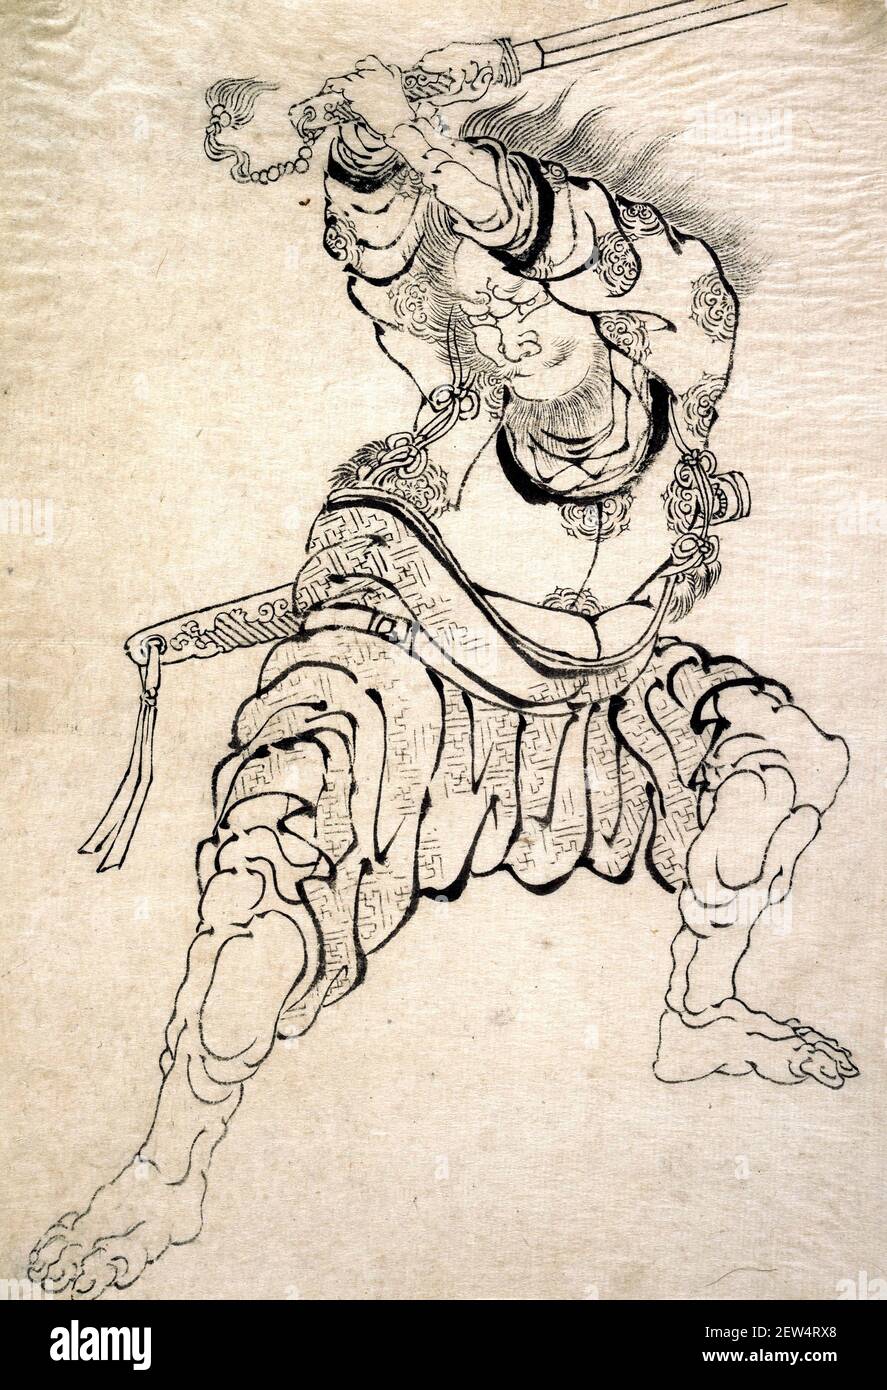 Hokusai. Un guerrero del artista y grabador japonés, Katsushika Hokusai (葛飾 北斎, c. 1760-1849), impresión de bloque de madera monocromo, tinta sobre papel Foto de stock